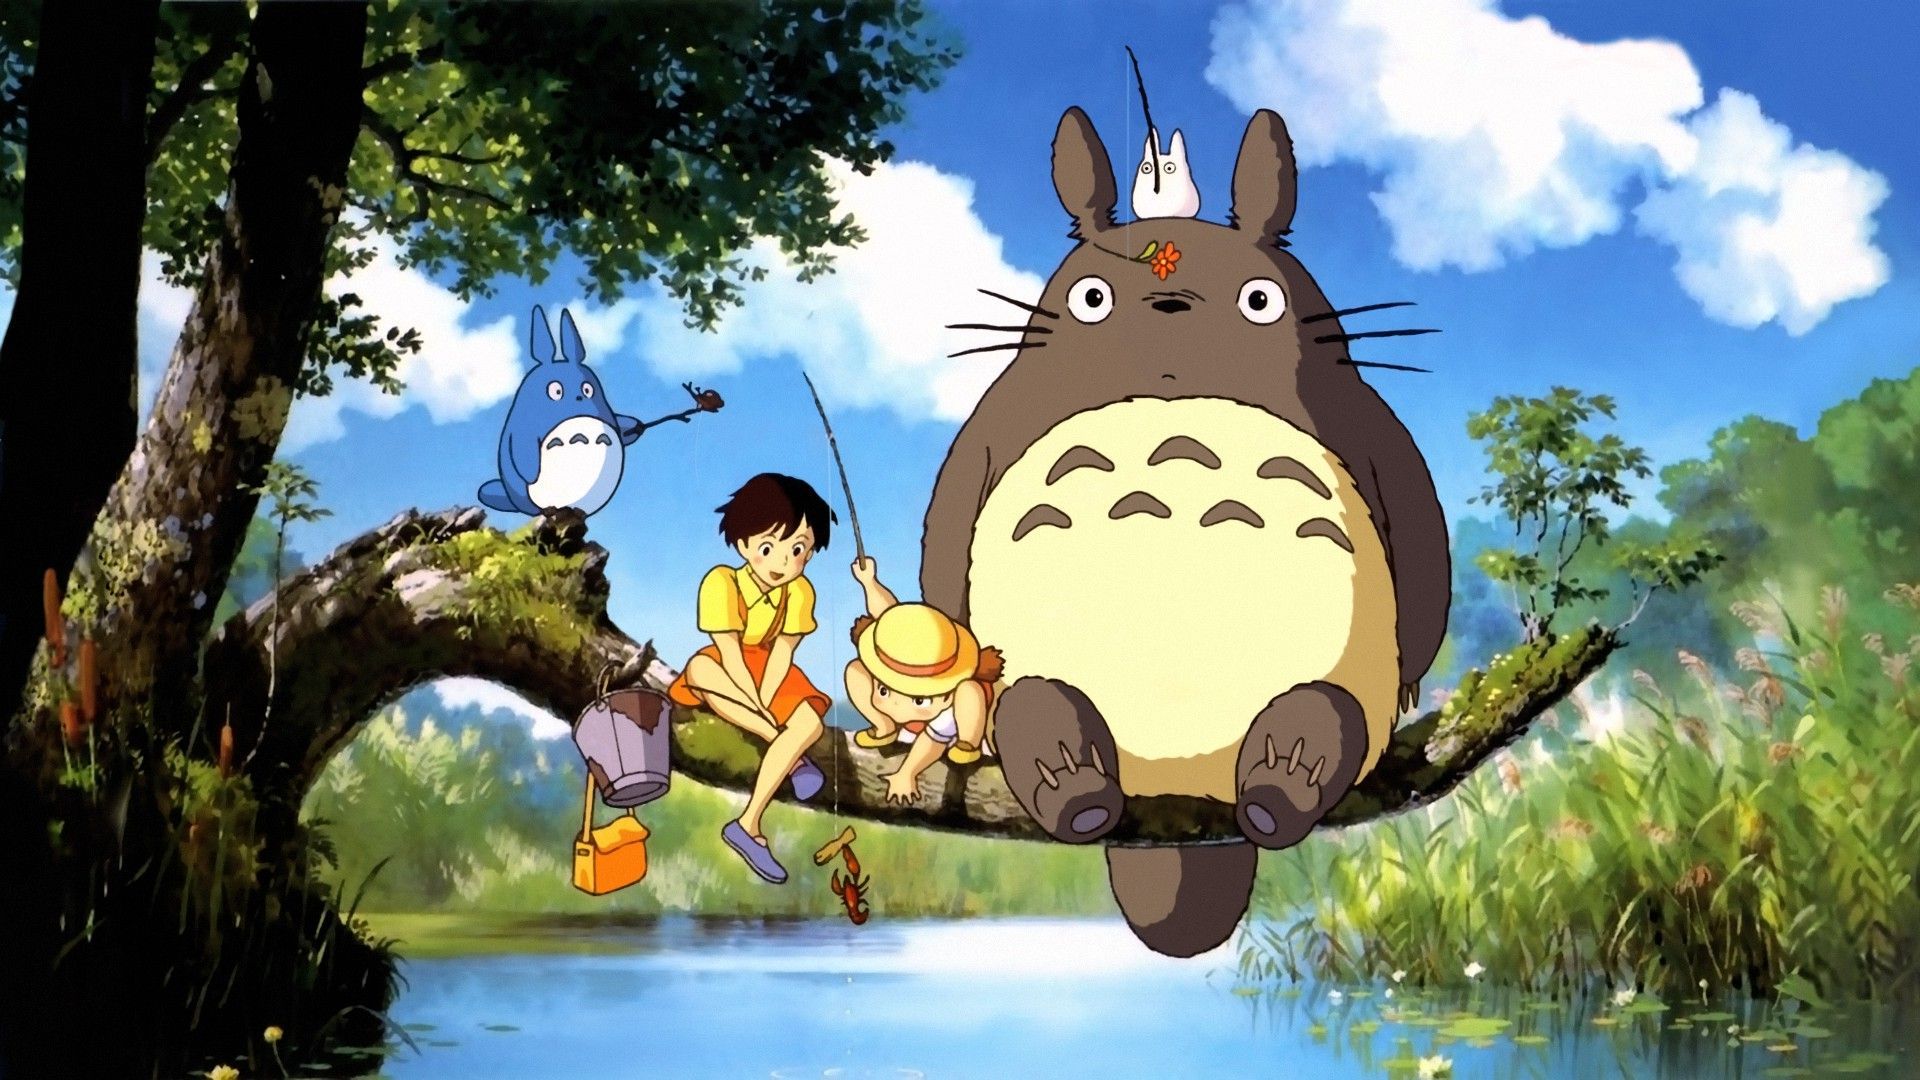 หนังเก่าเล่าใหม่ 05: My Neighbor Totoro (Hayao Miyazaki,1988) เขียนโดย Form  Corleone - Pantip